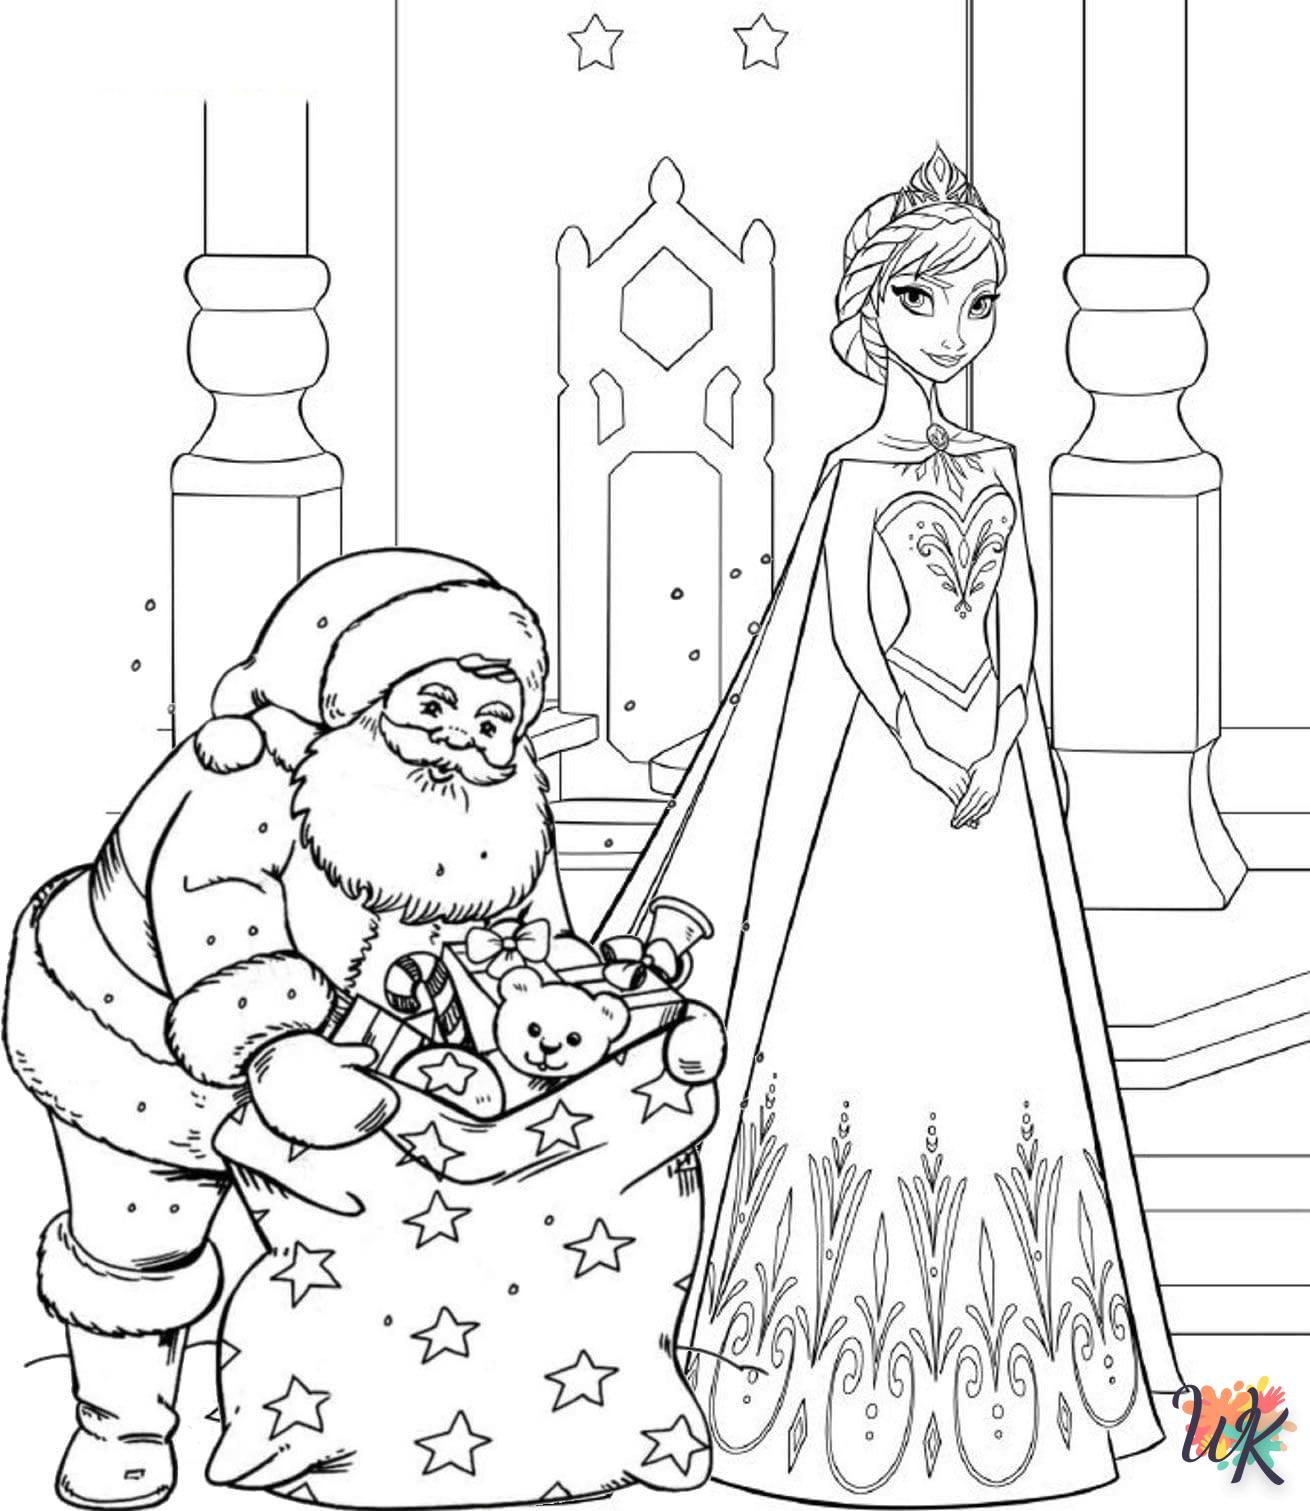 Dibujos para Colorear Navidad de dibujos animados 40